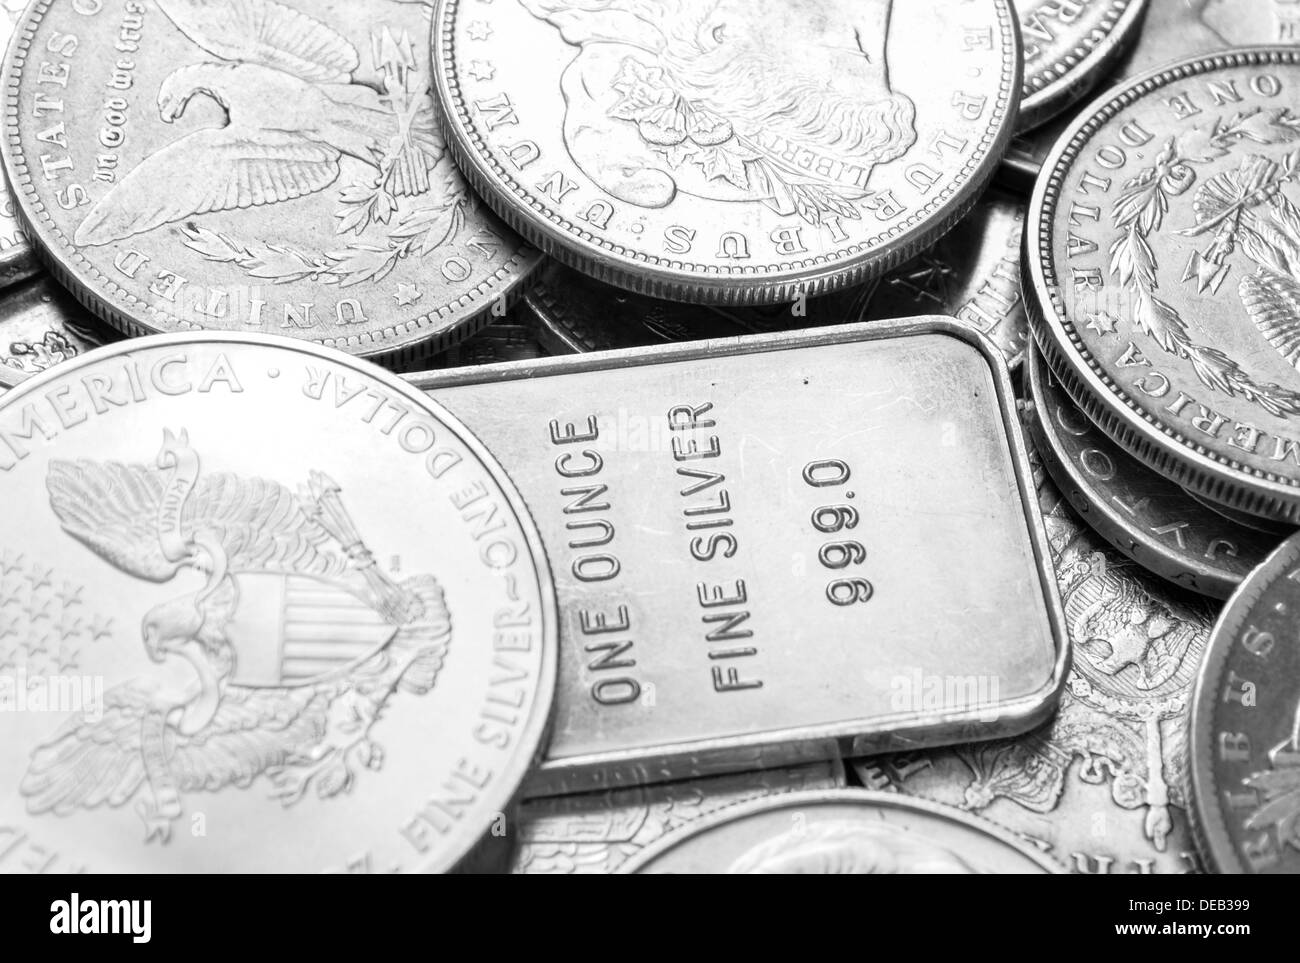 Silver coins and bars macro shot Stock Photo